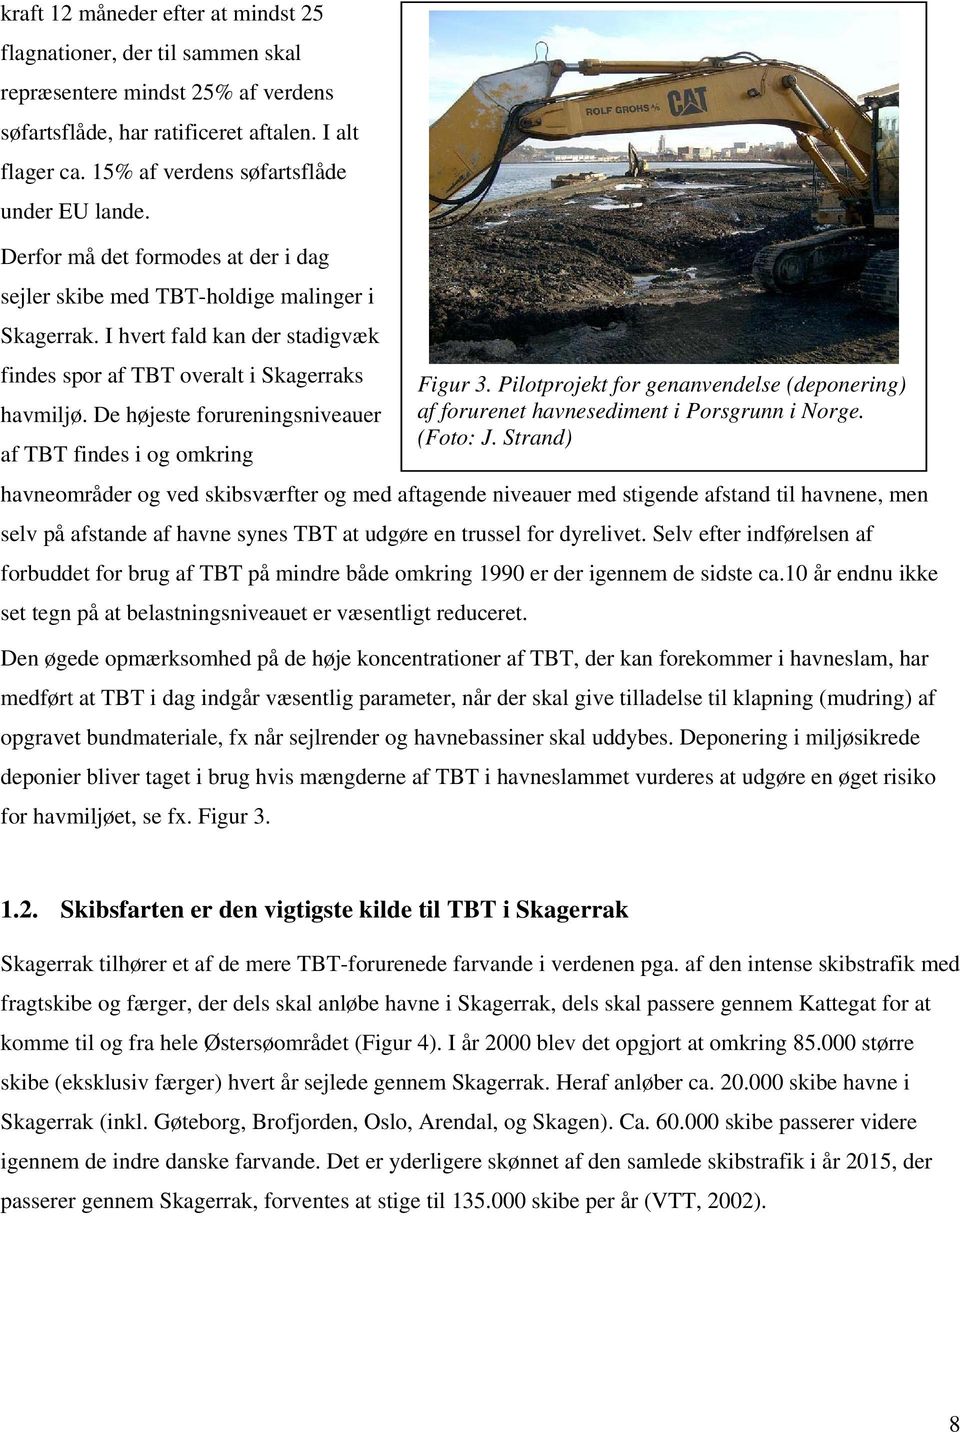 I hvert fald kan der stadigvæk findes spor af TBT overalt i Skagerraks Figur 3. Pilotprojekt for genanvendelse (deponering) havmiljø.